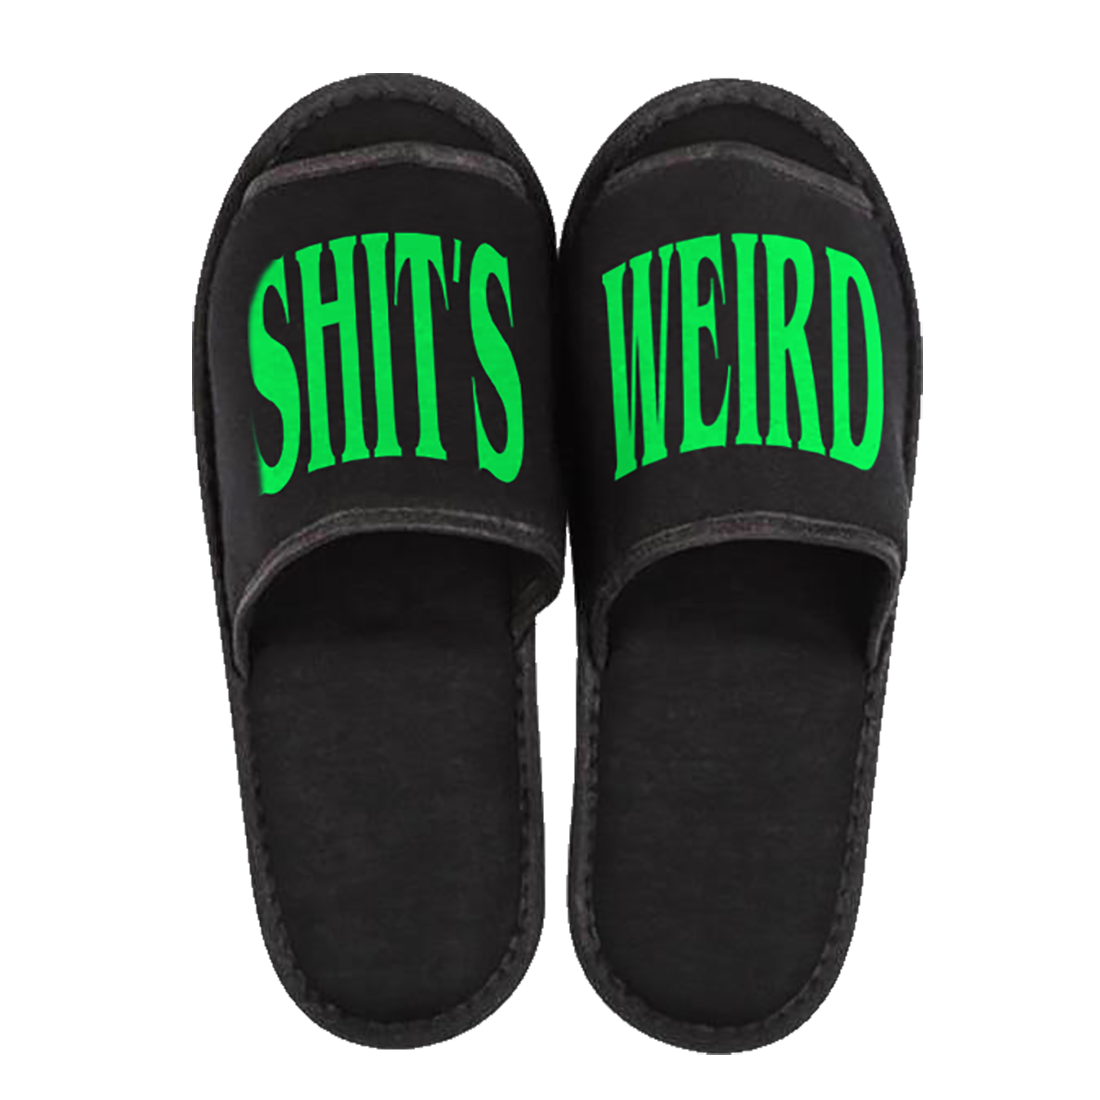 SHIT'S Weird! Black Slides